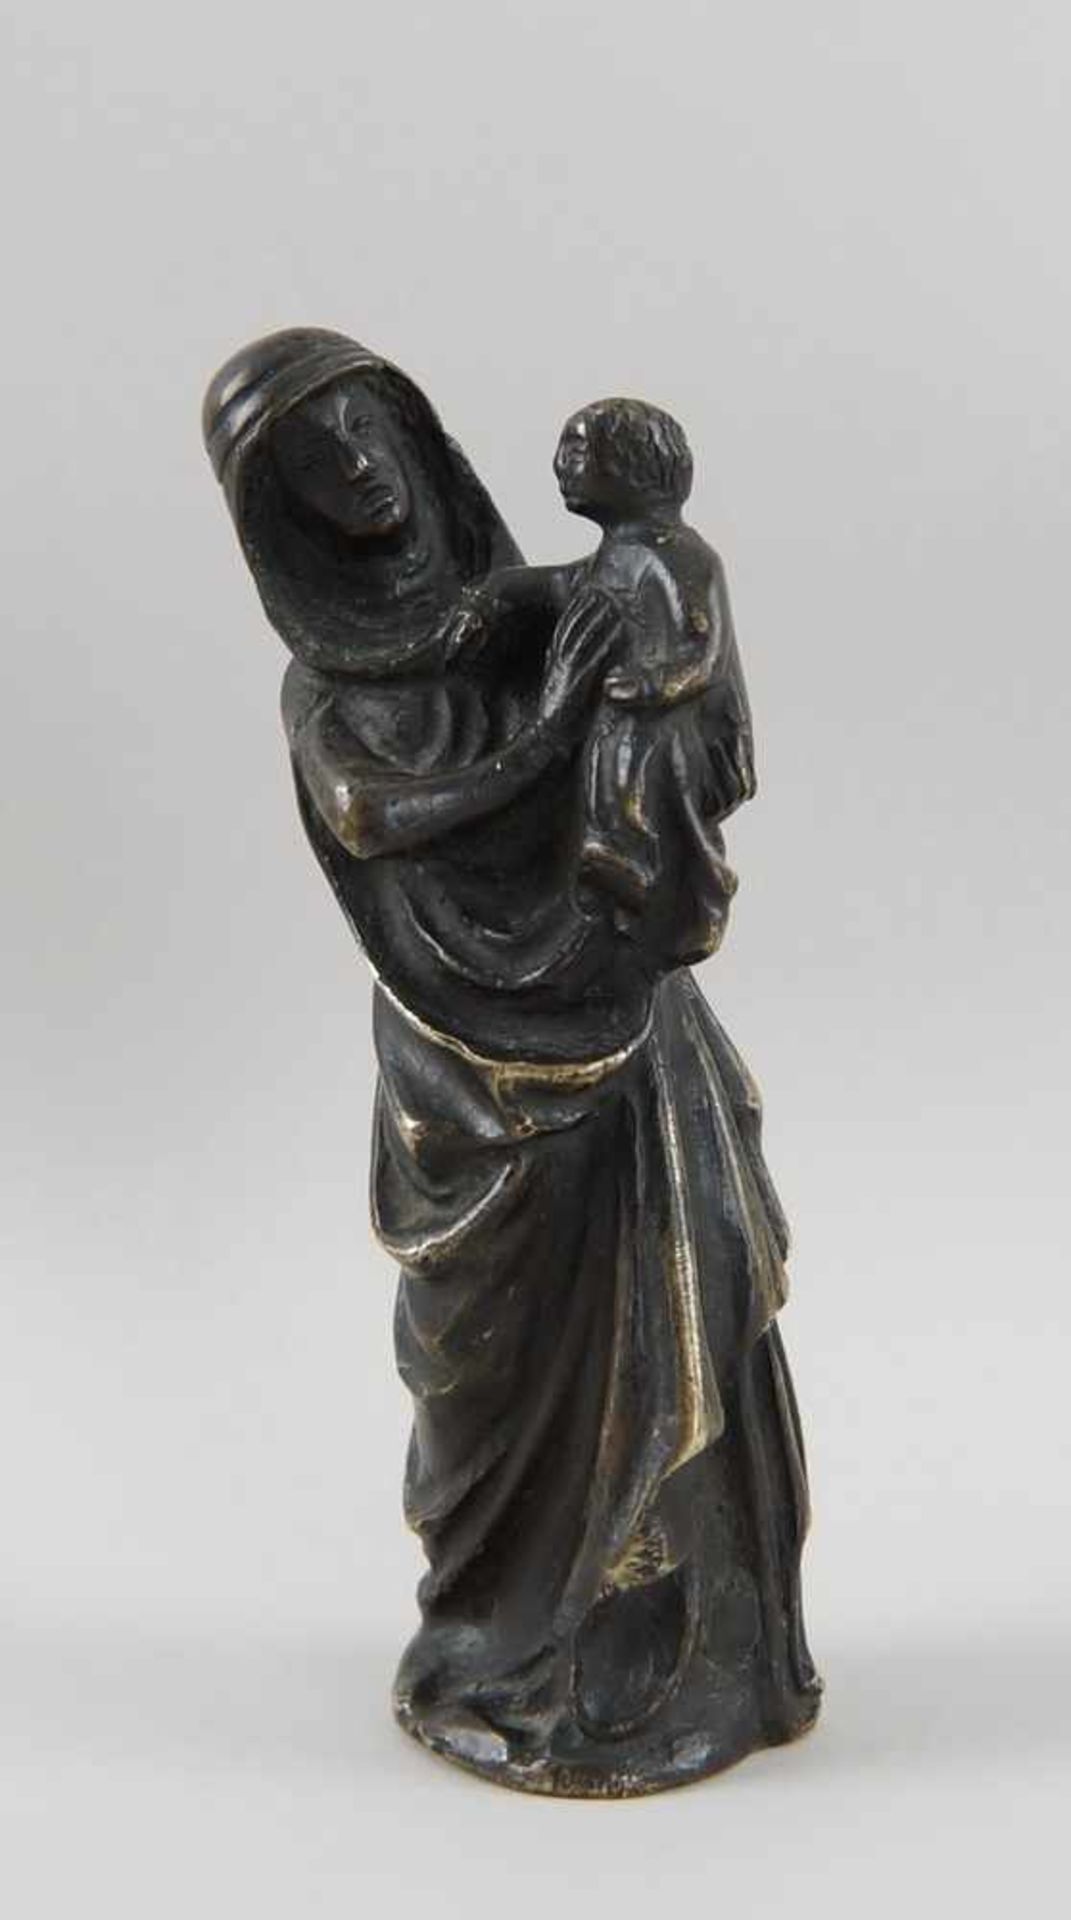 Gotische Skulptur einer Madonna mit Kind, Bronze, wohl um 1500, H 17,5 cm